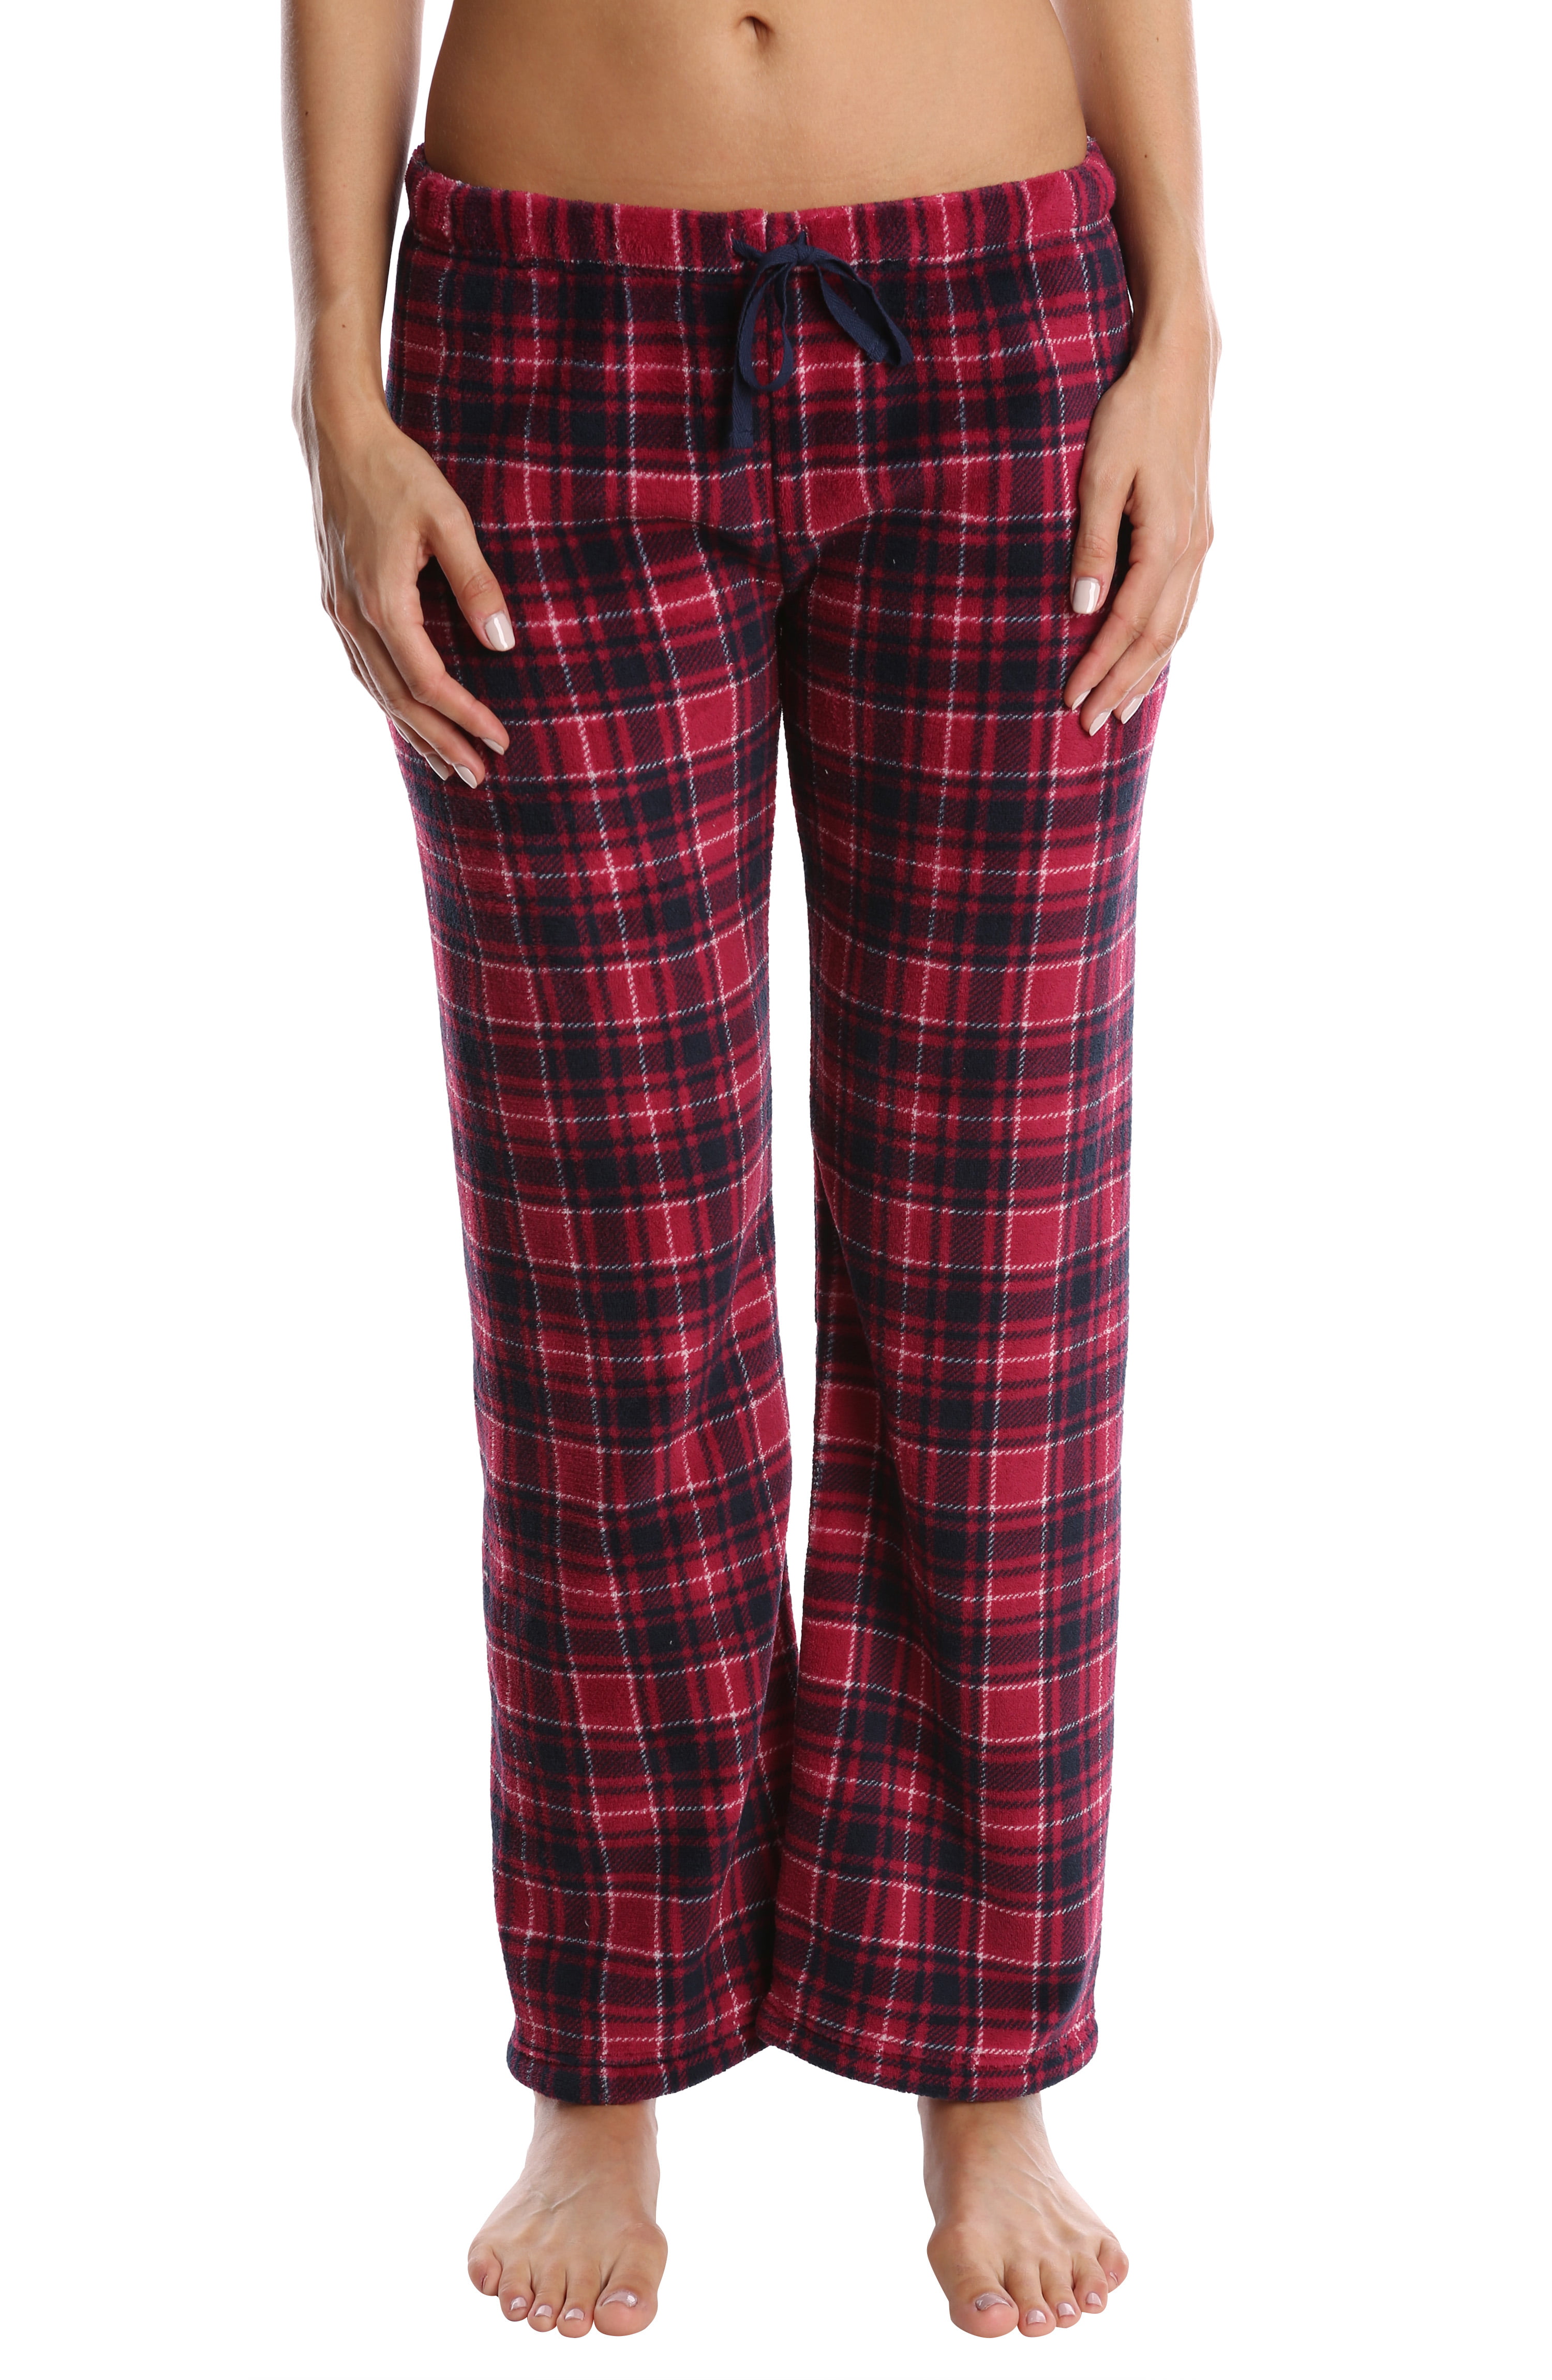 Nomad Women's Plush Pajama Pants - Ladies Lounge & Sleepwear Bottoms ...